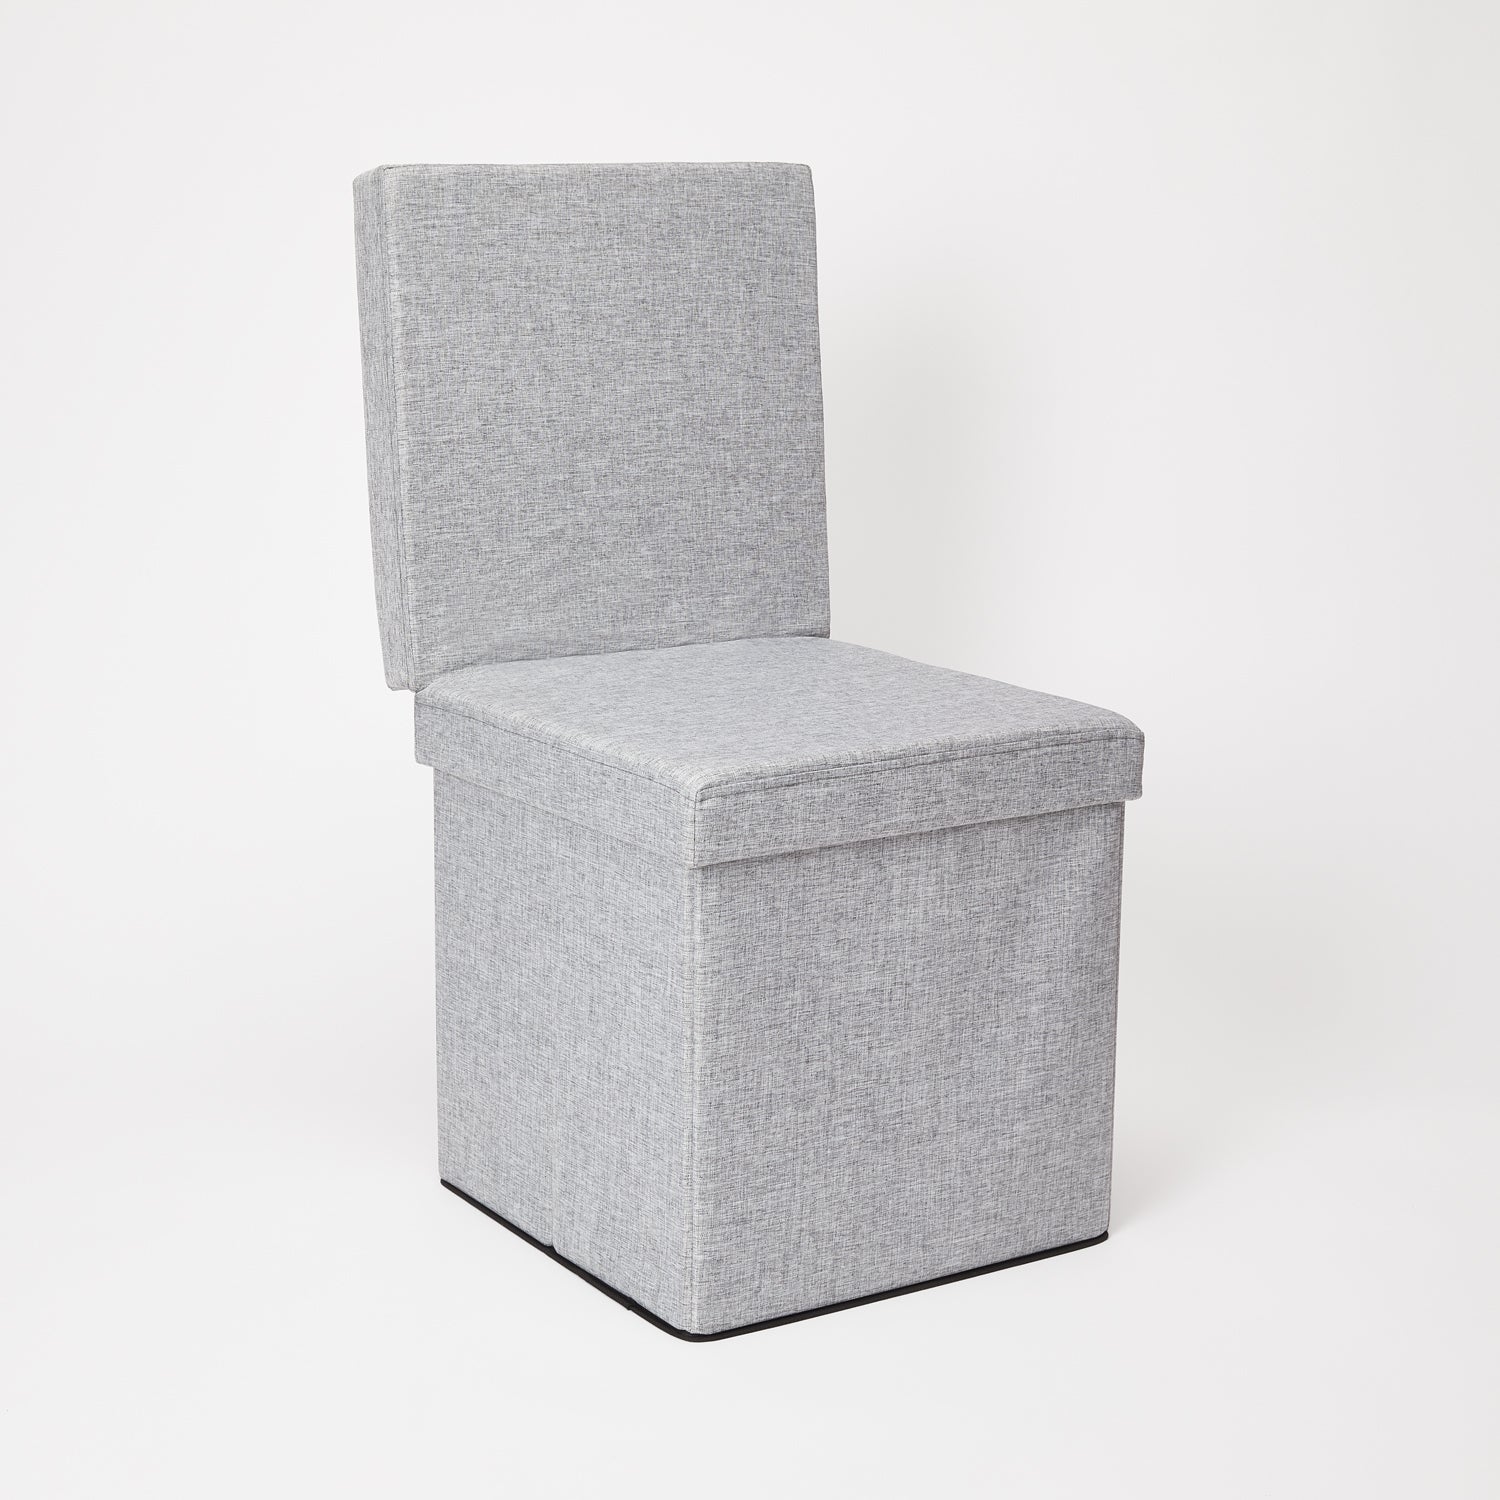 Collapsible Storage Ottoman Chair - Heather Grey | Storage